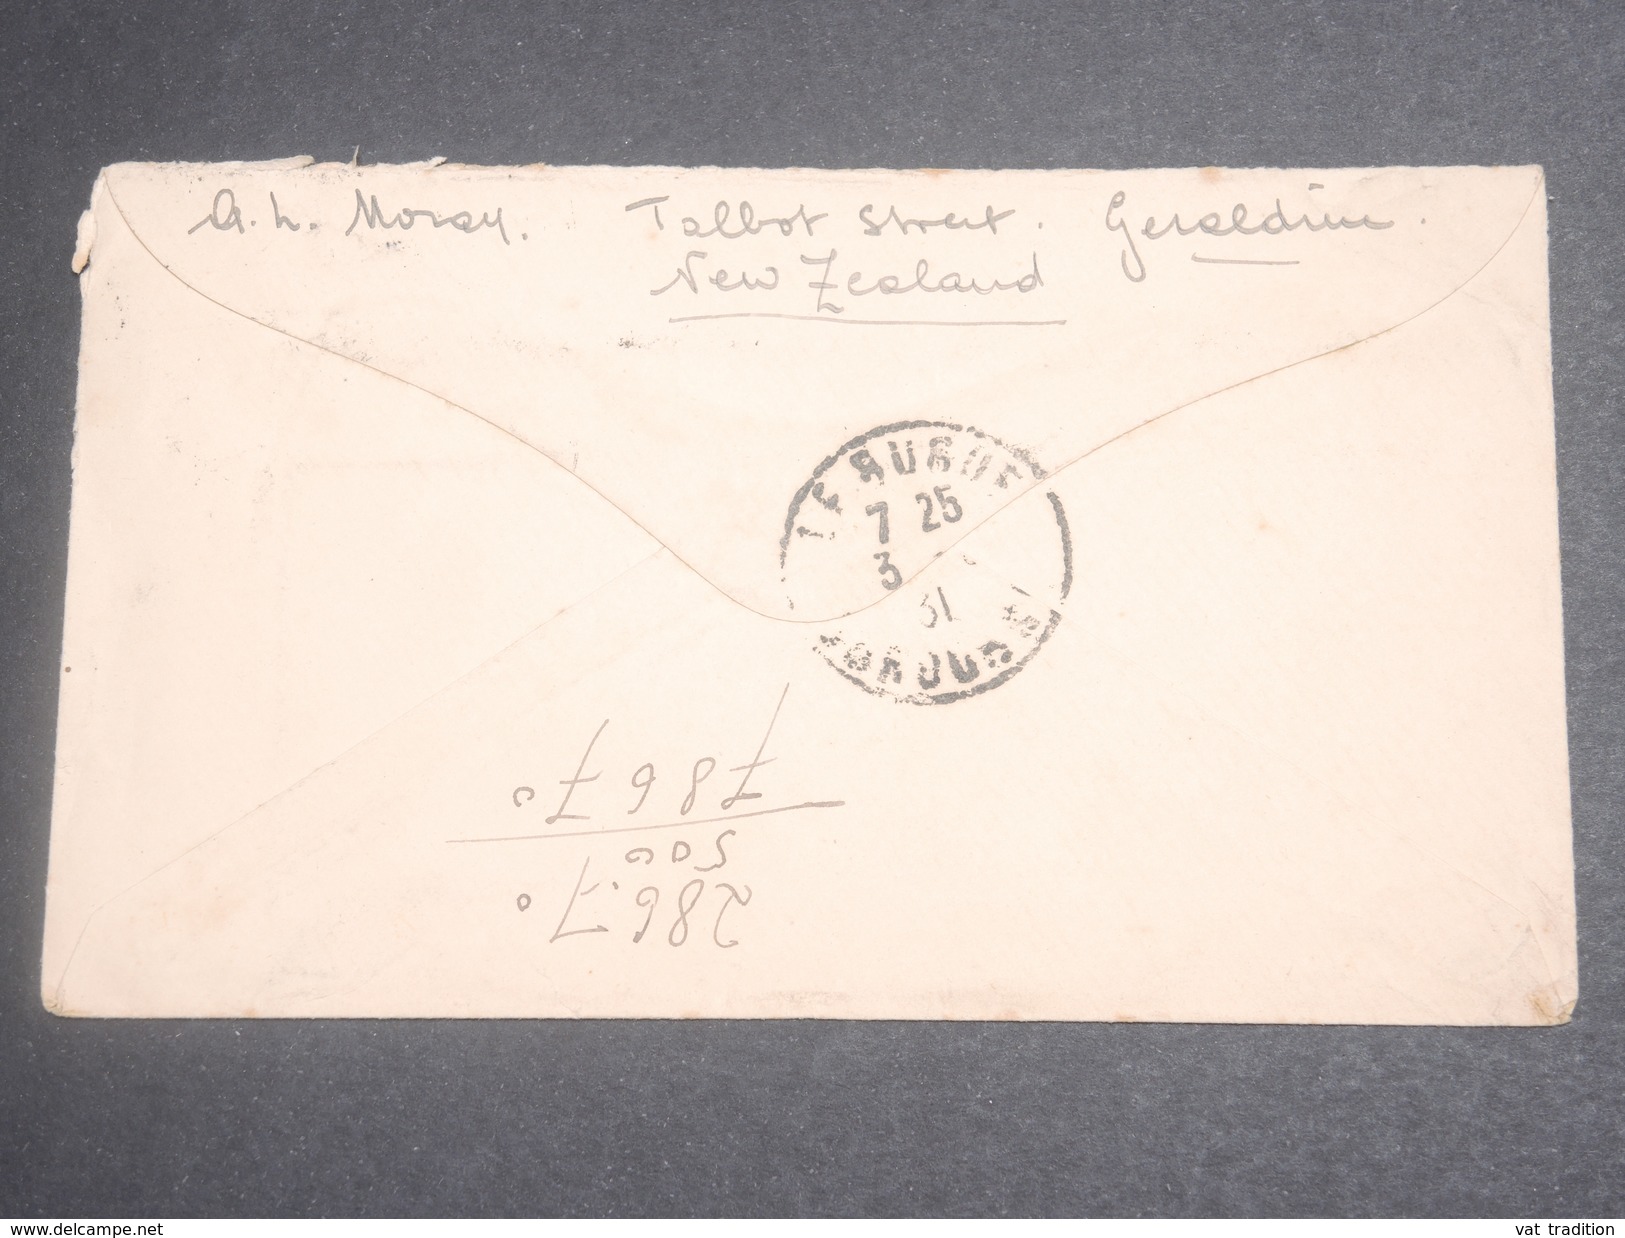 NOUVELLE ZELANDE - Enveloppe De Géraldine Pour La France En 1931, Affranchissement Plaisant - L 7134 - Lettres & Documents